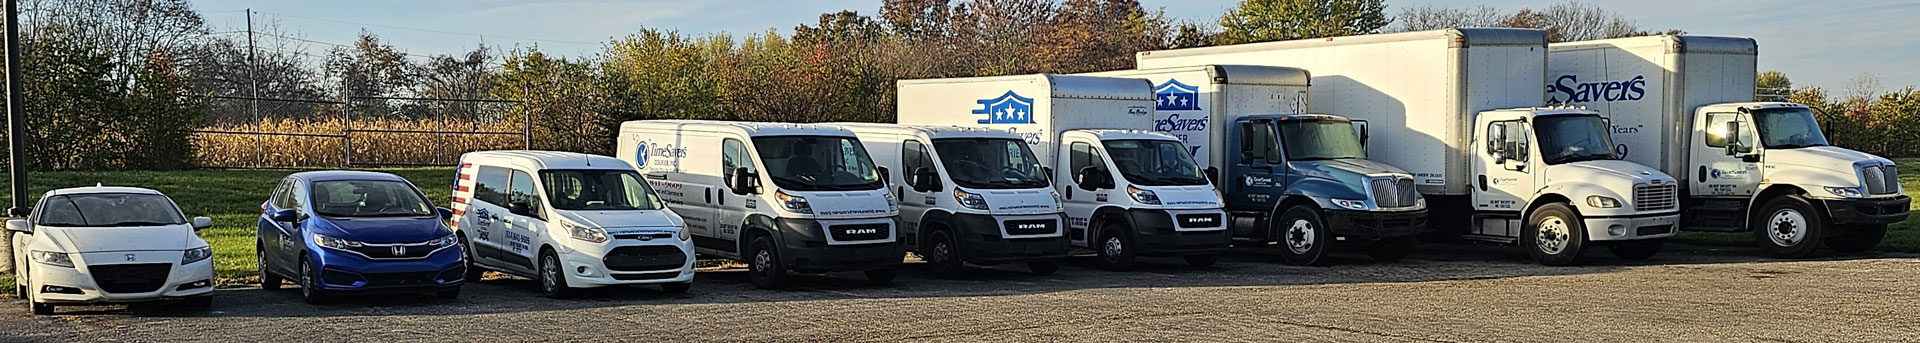 TimeSavers Courier Service Box Trucks Vans Courier Vehicles